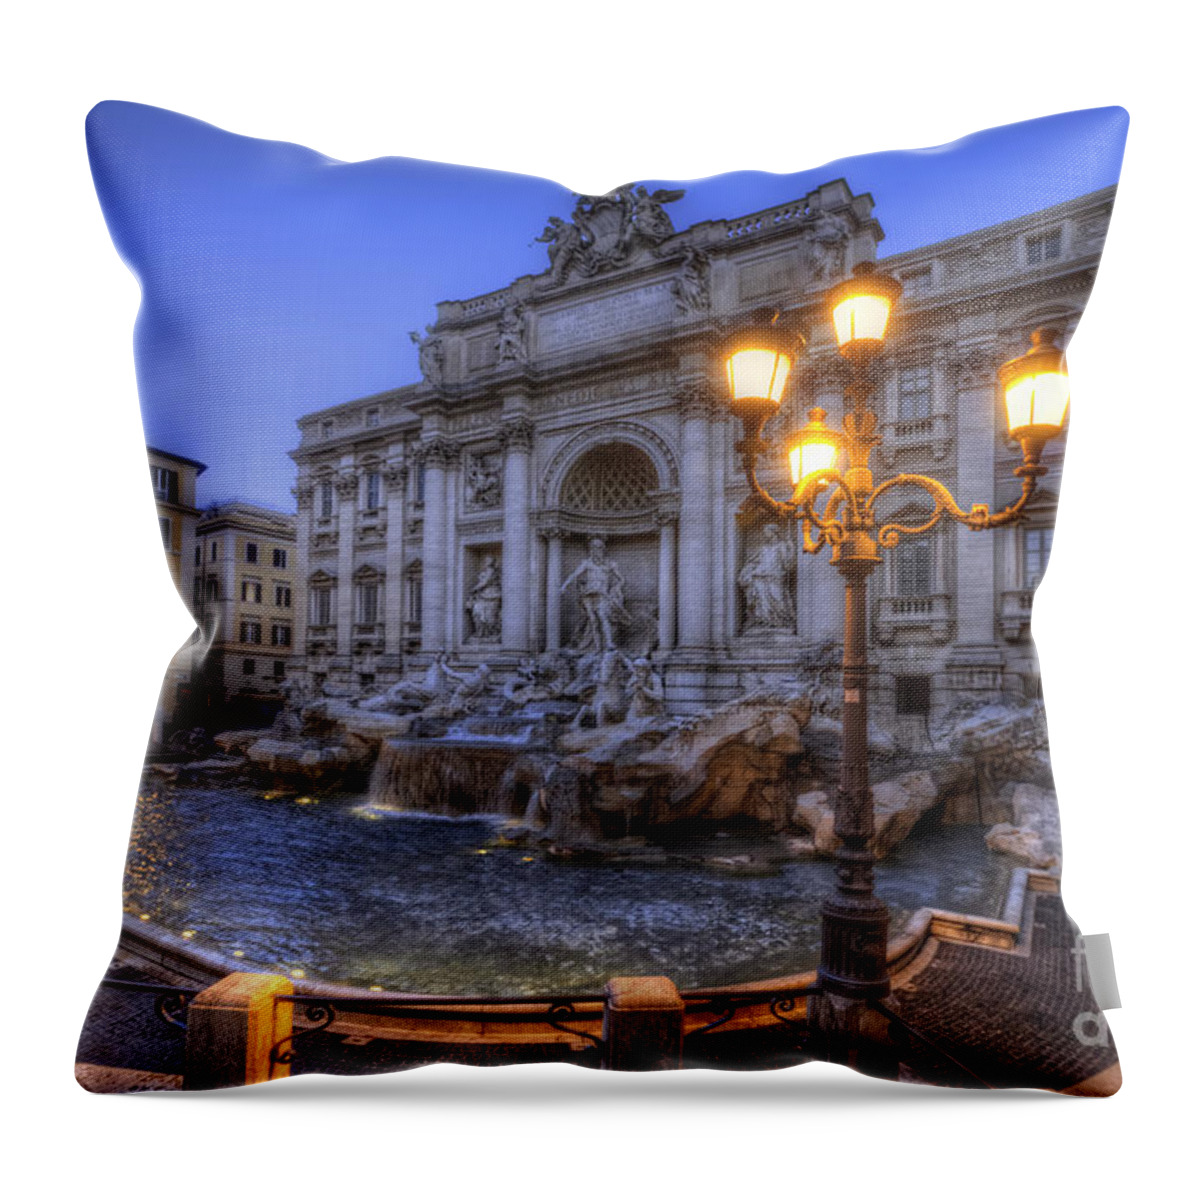 Yhun Suarez Throw Pillow featuring the photograph Fontana di Trevi 3.0 by Yhun Suarez